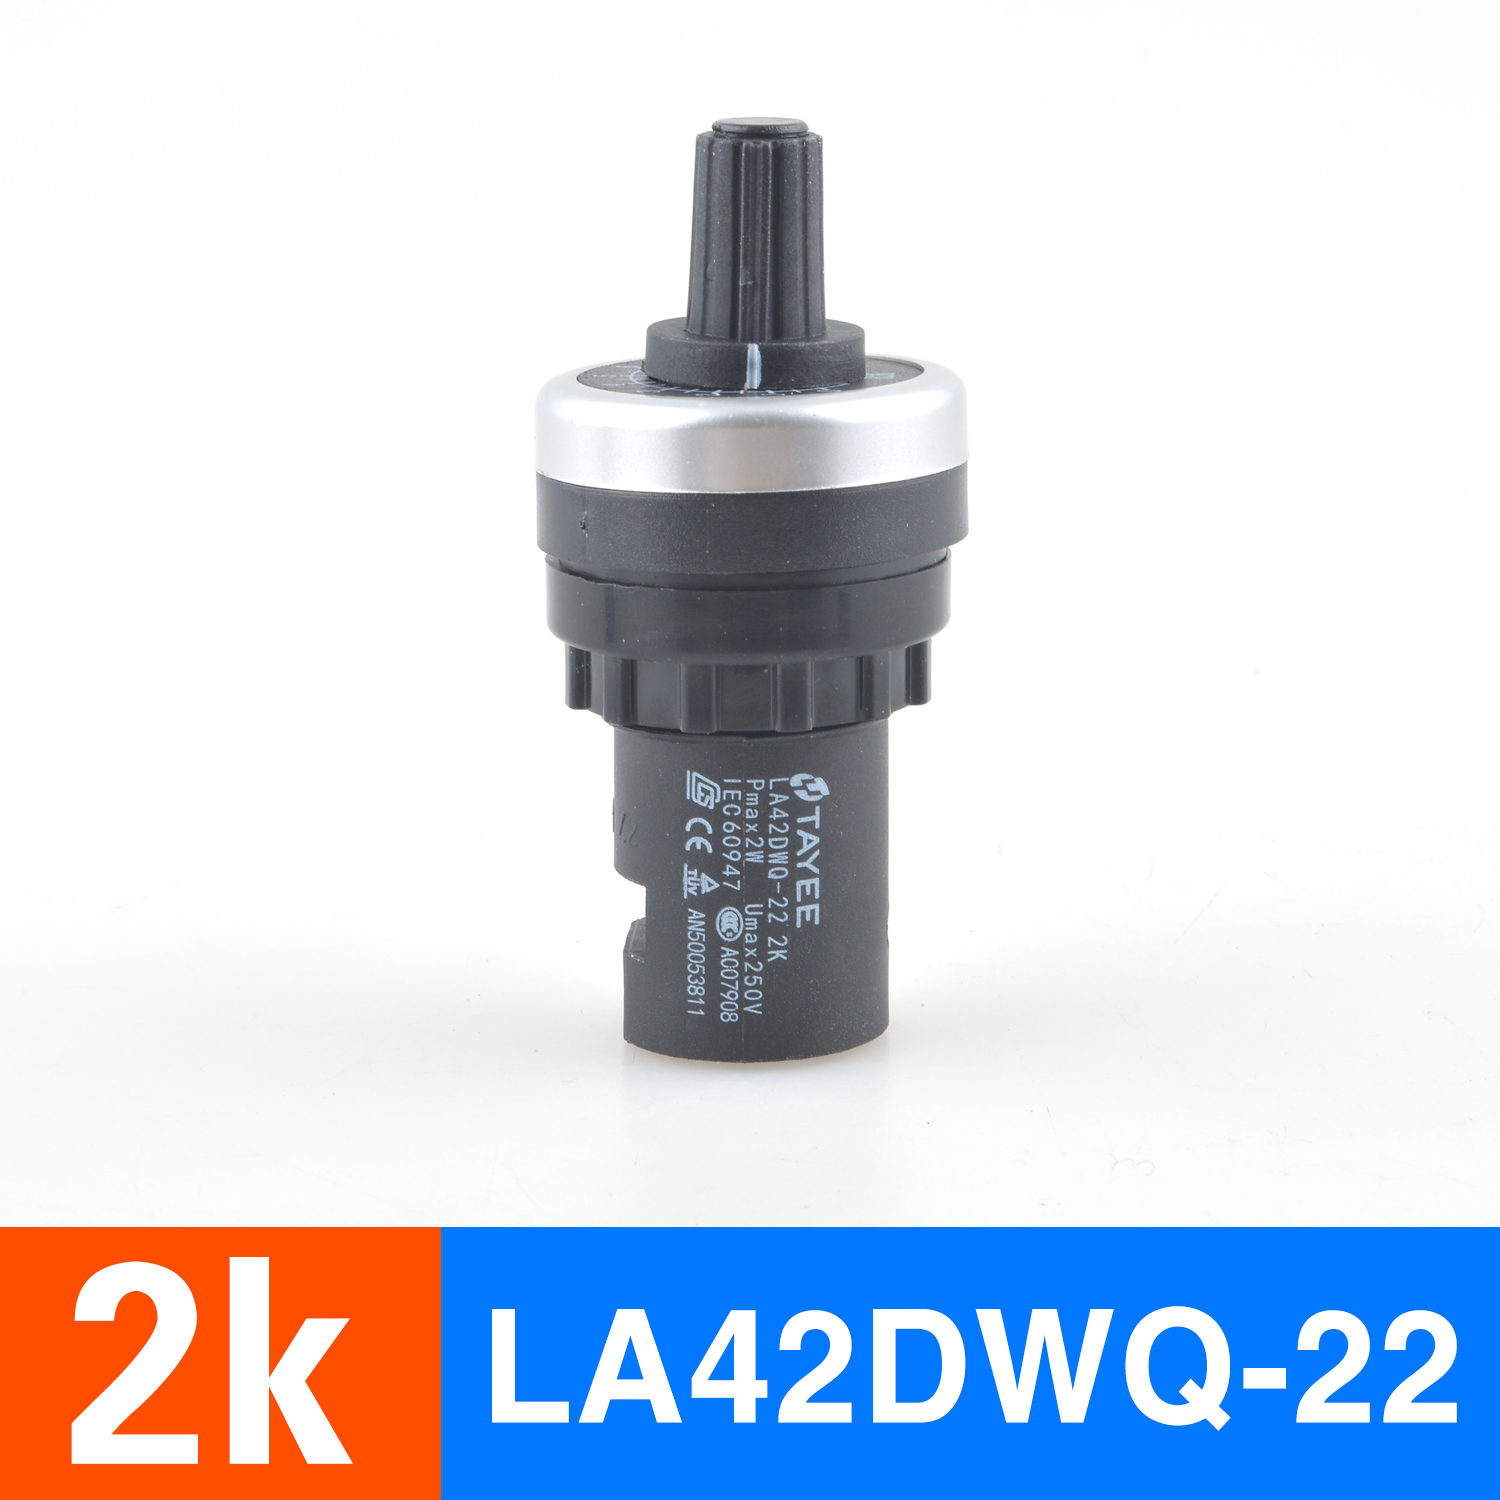 正品2k正品上海天逸变频器调速电位器精密LA42DWQ-22调速器22mm5K10K